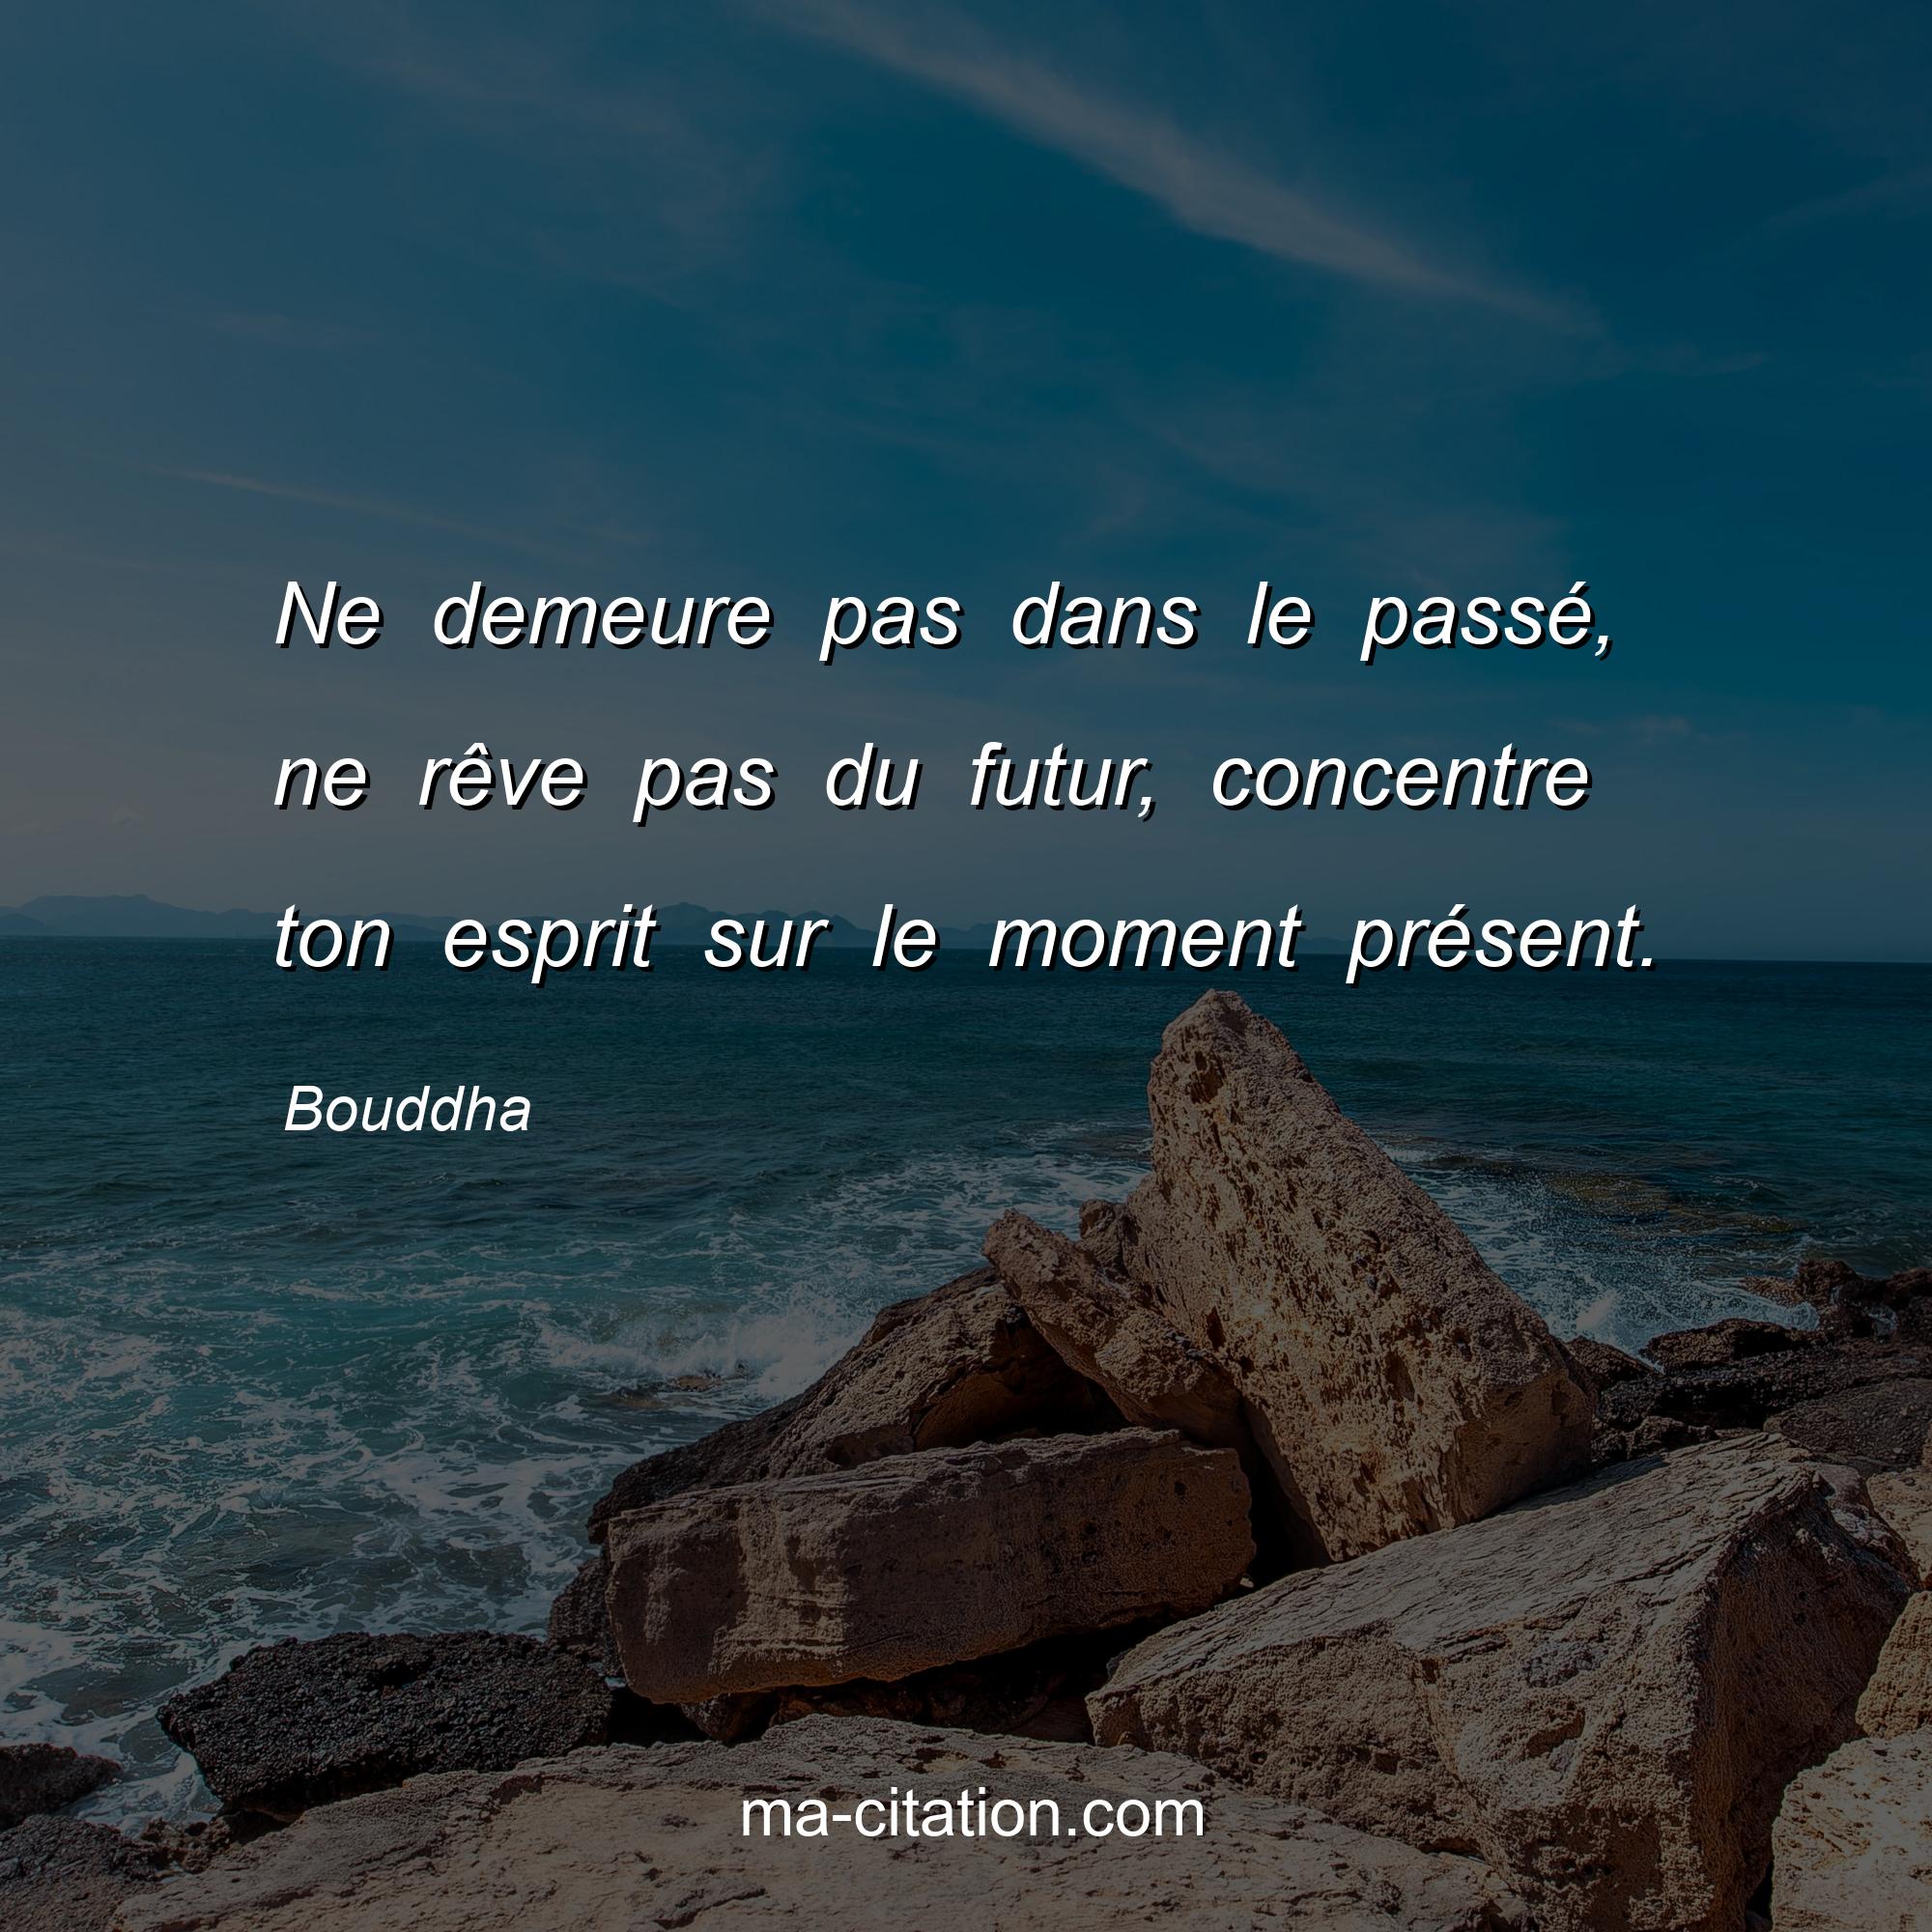 Bouddha : Ne demeure pas dans le passé, ne rêve pas du futur, concentre ton esprit sur le moment présent.